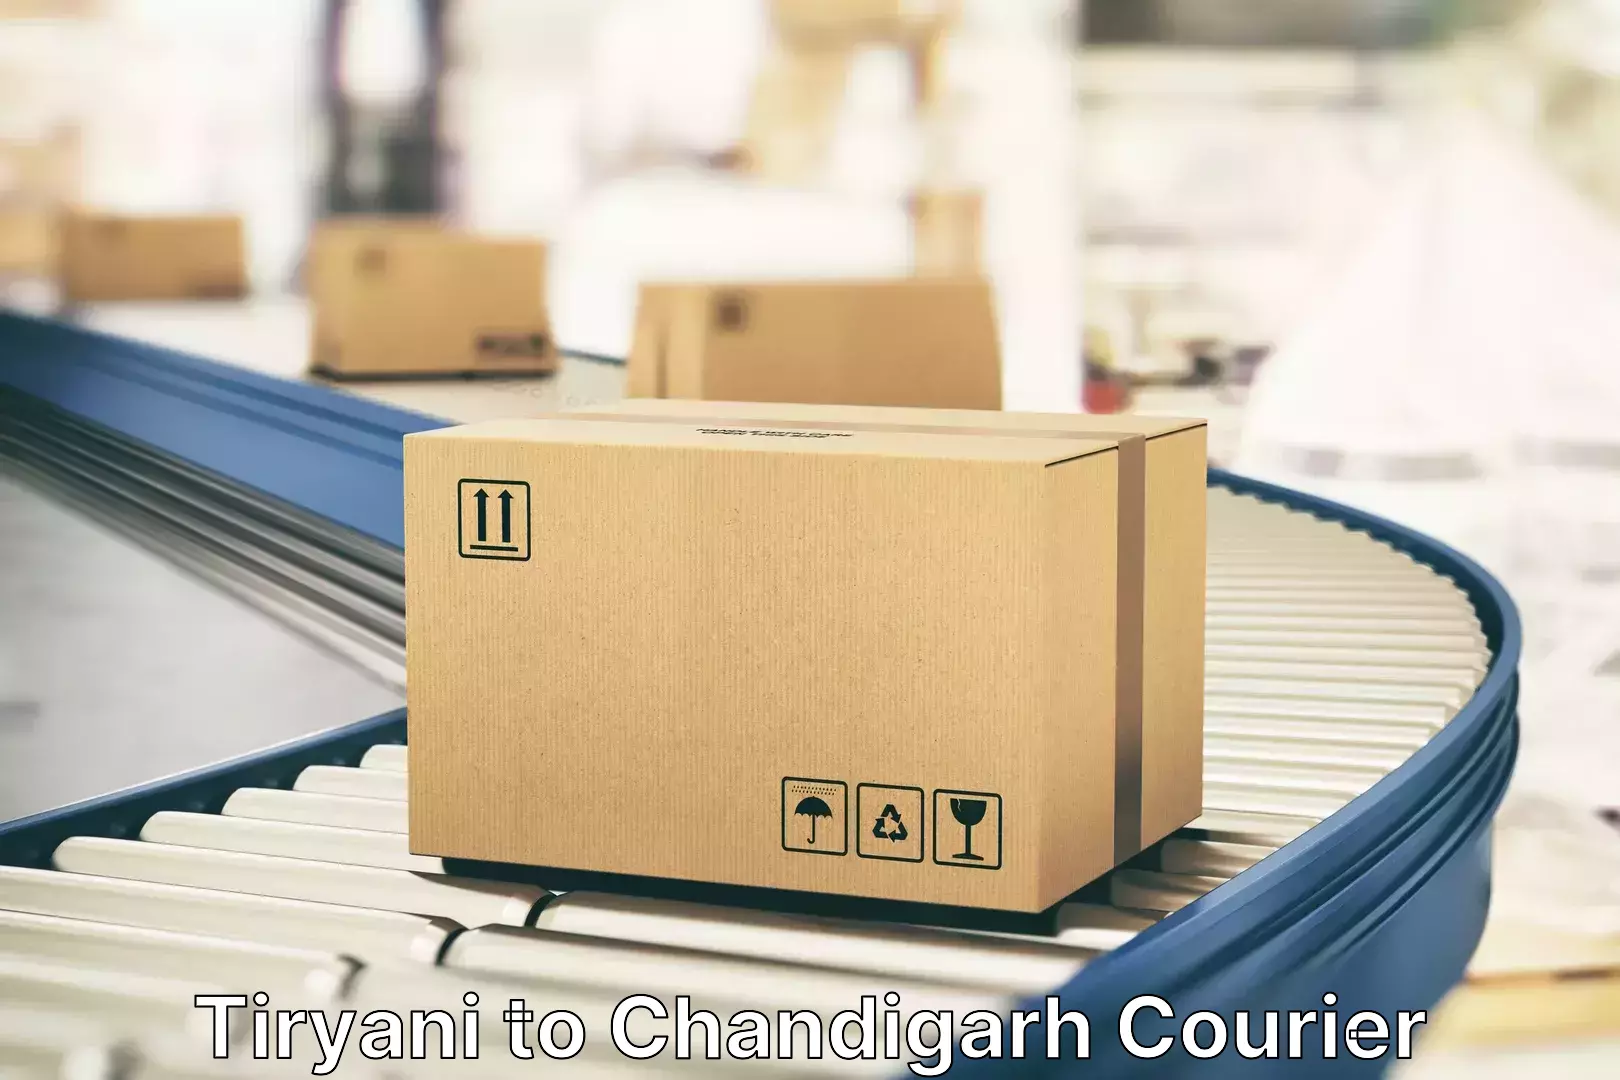 Luggage transport consultancy Tiryani to Chandigarh